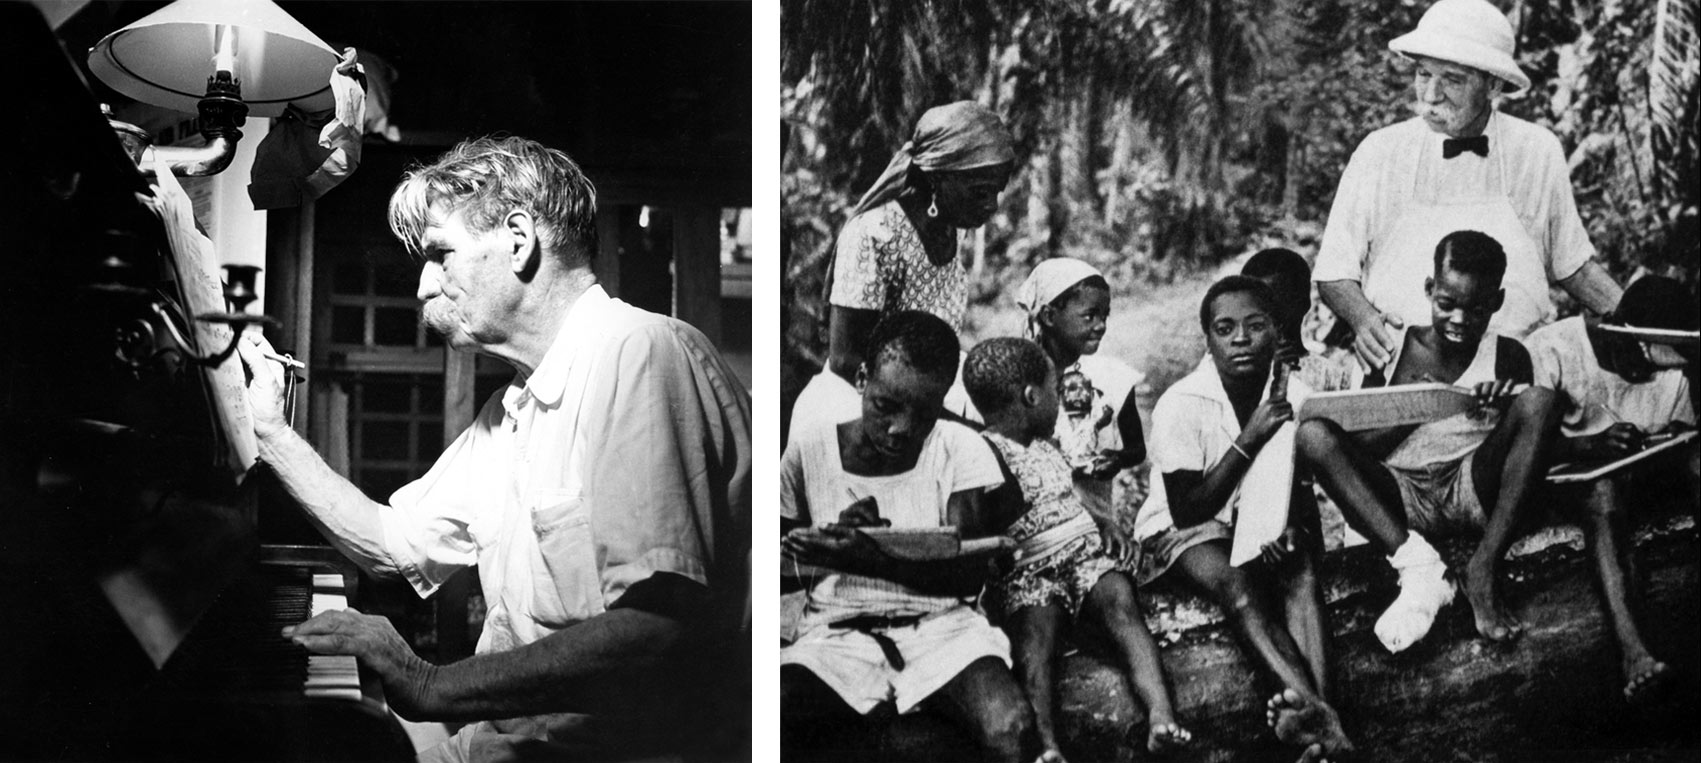 Zweigeteiltes Bild - Albert Schweitzer am Klavier - und Albert Schweitzer mit Tropenhut, umgeben von Schulkindern verschiedenen Altersin Afrika